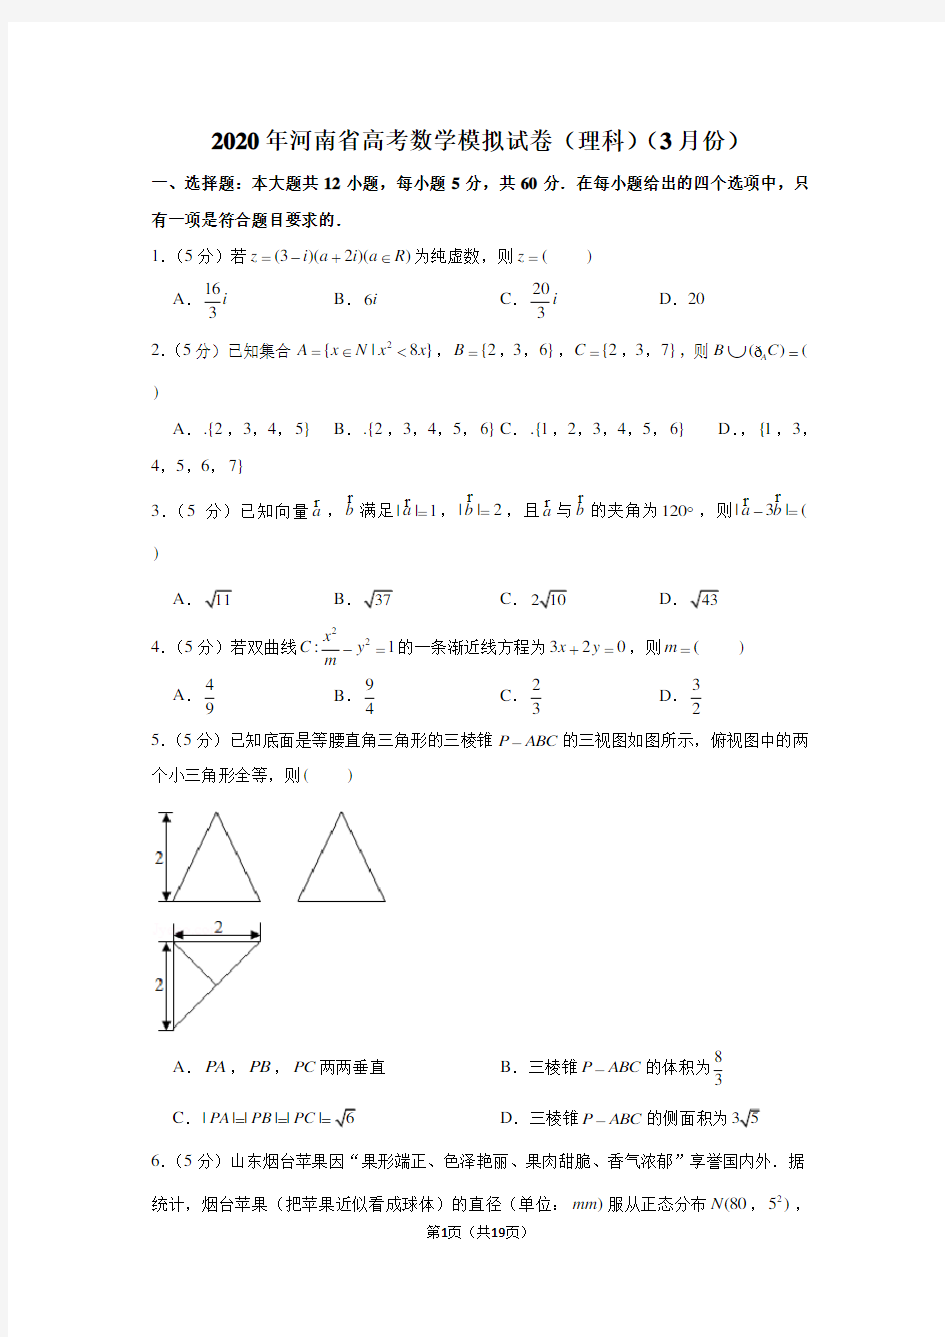 2020年河南省高考数学模拟试卷(理科)(3月份)